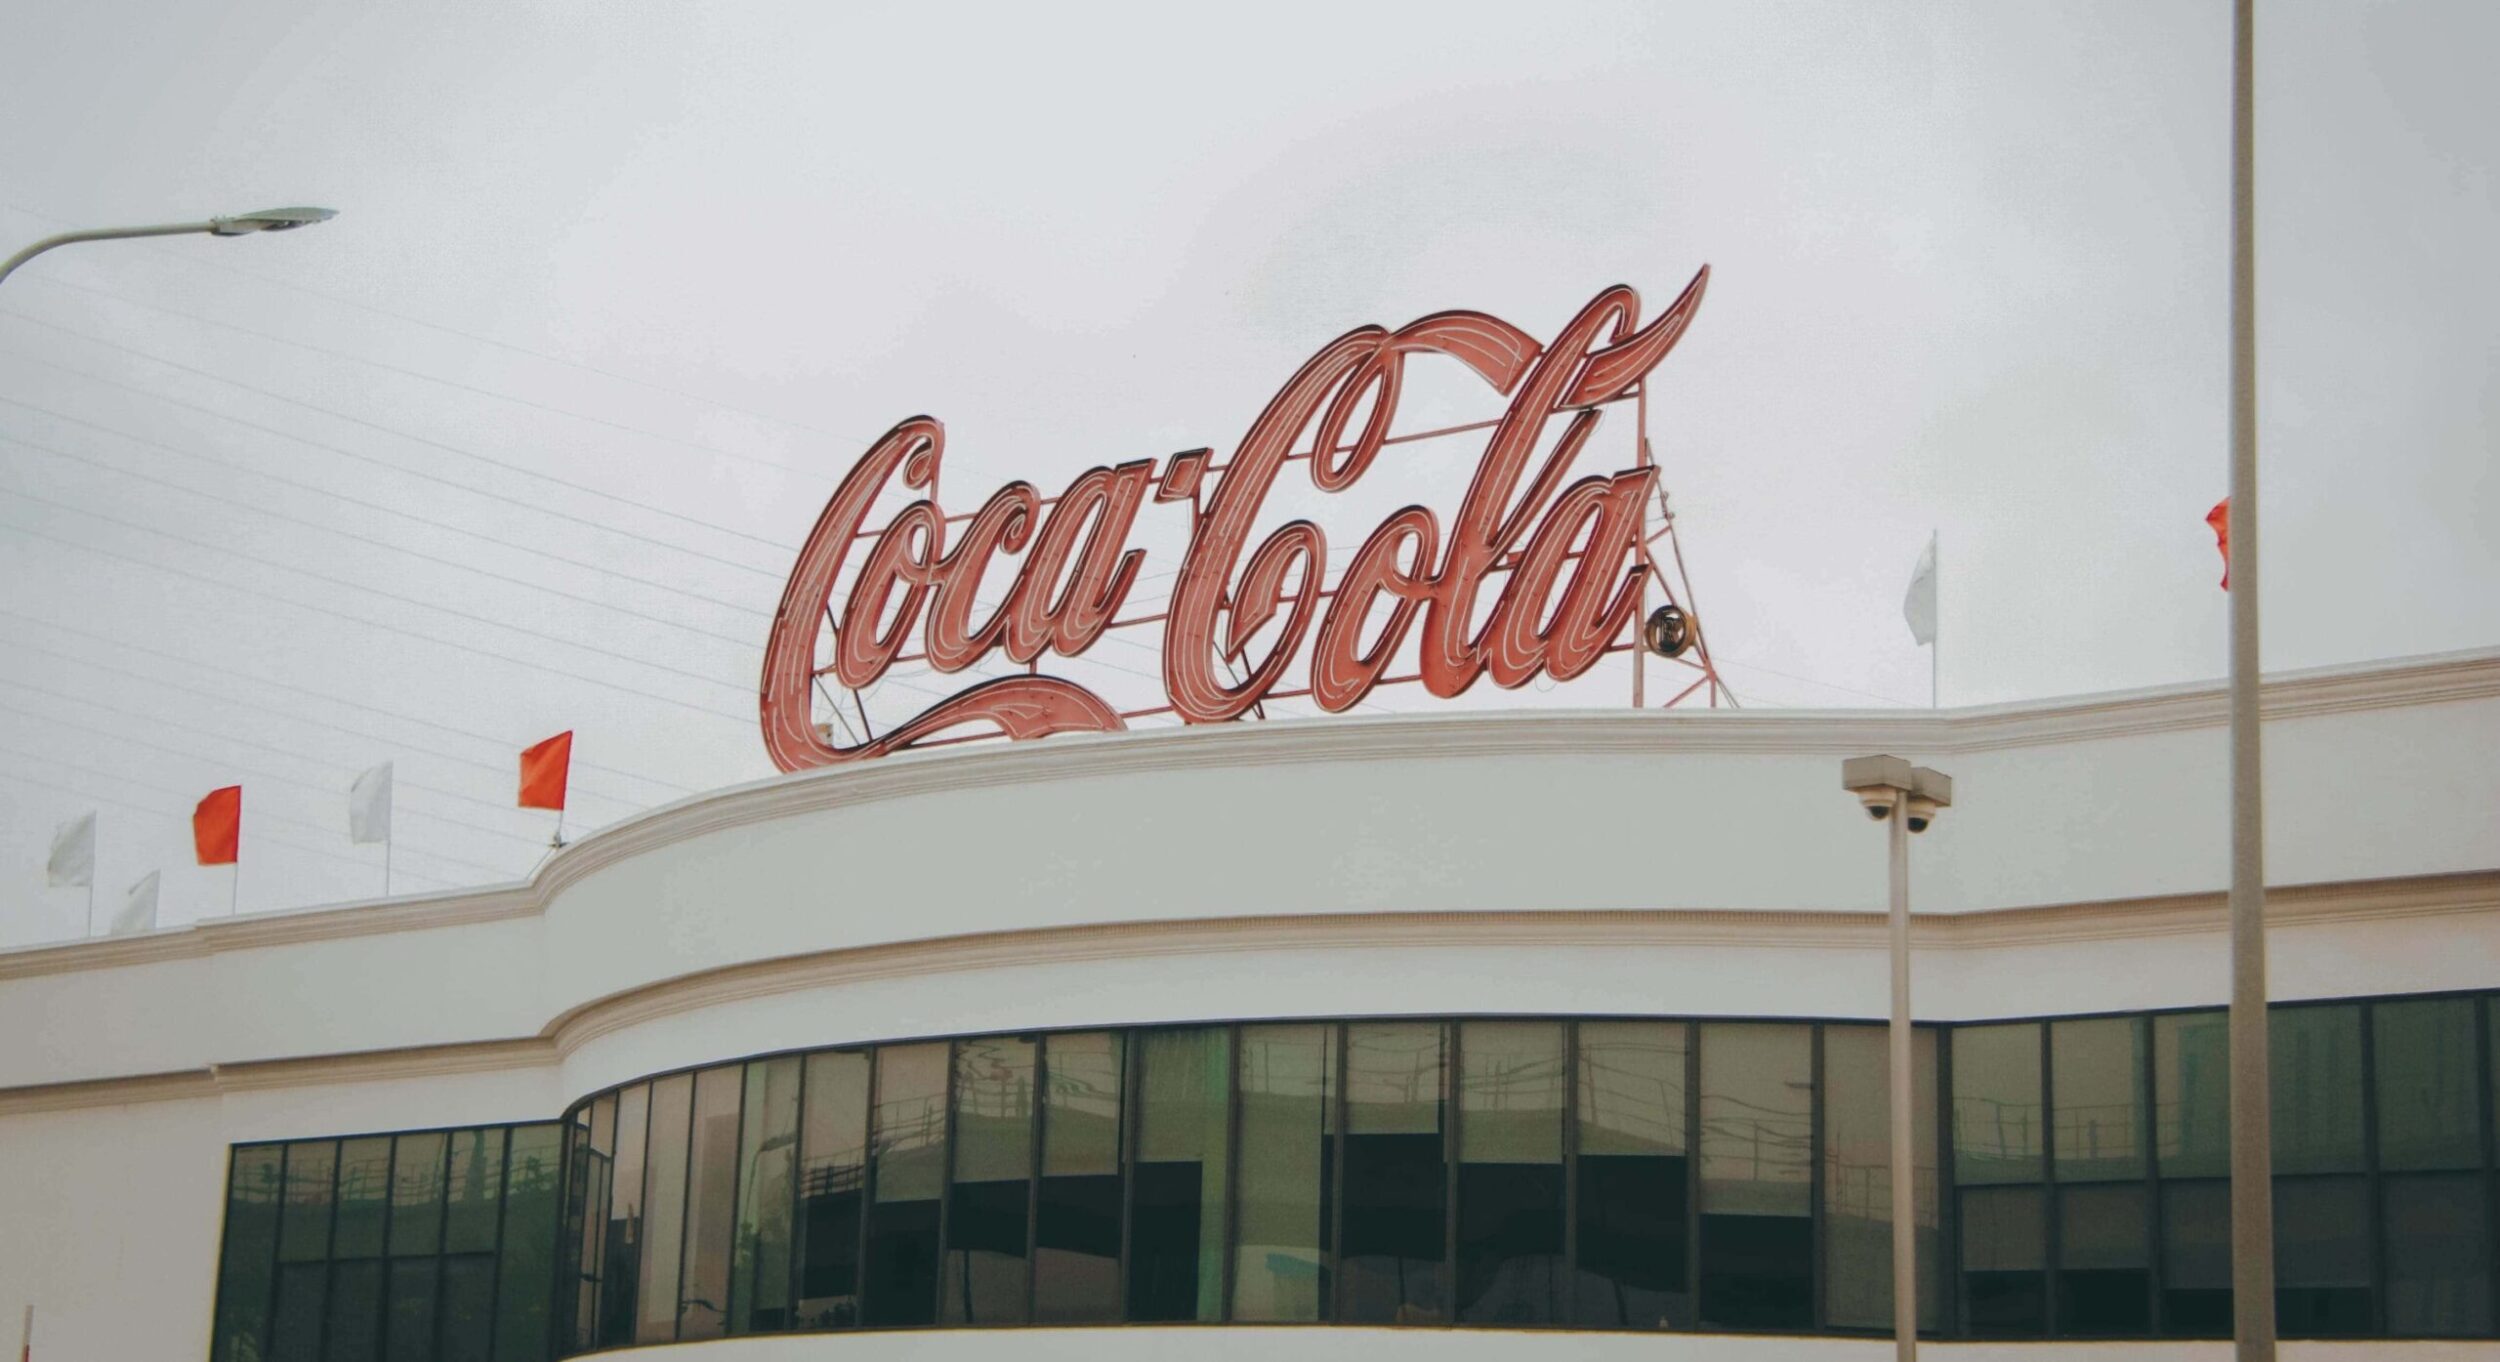 Coca-Cola Branding